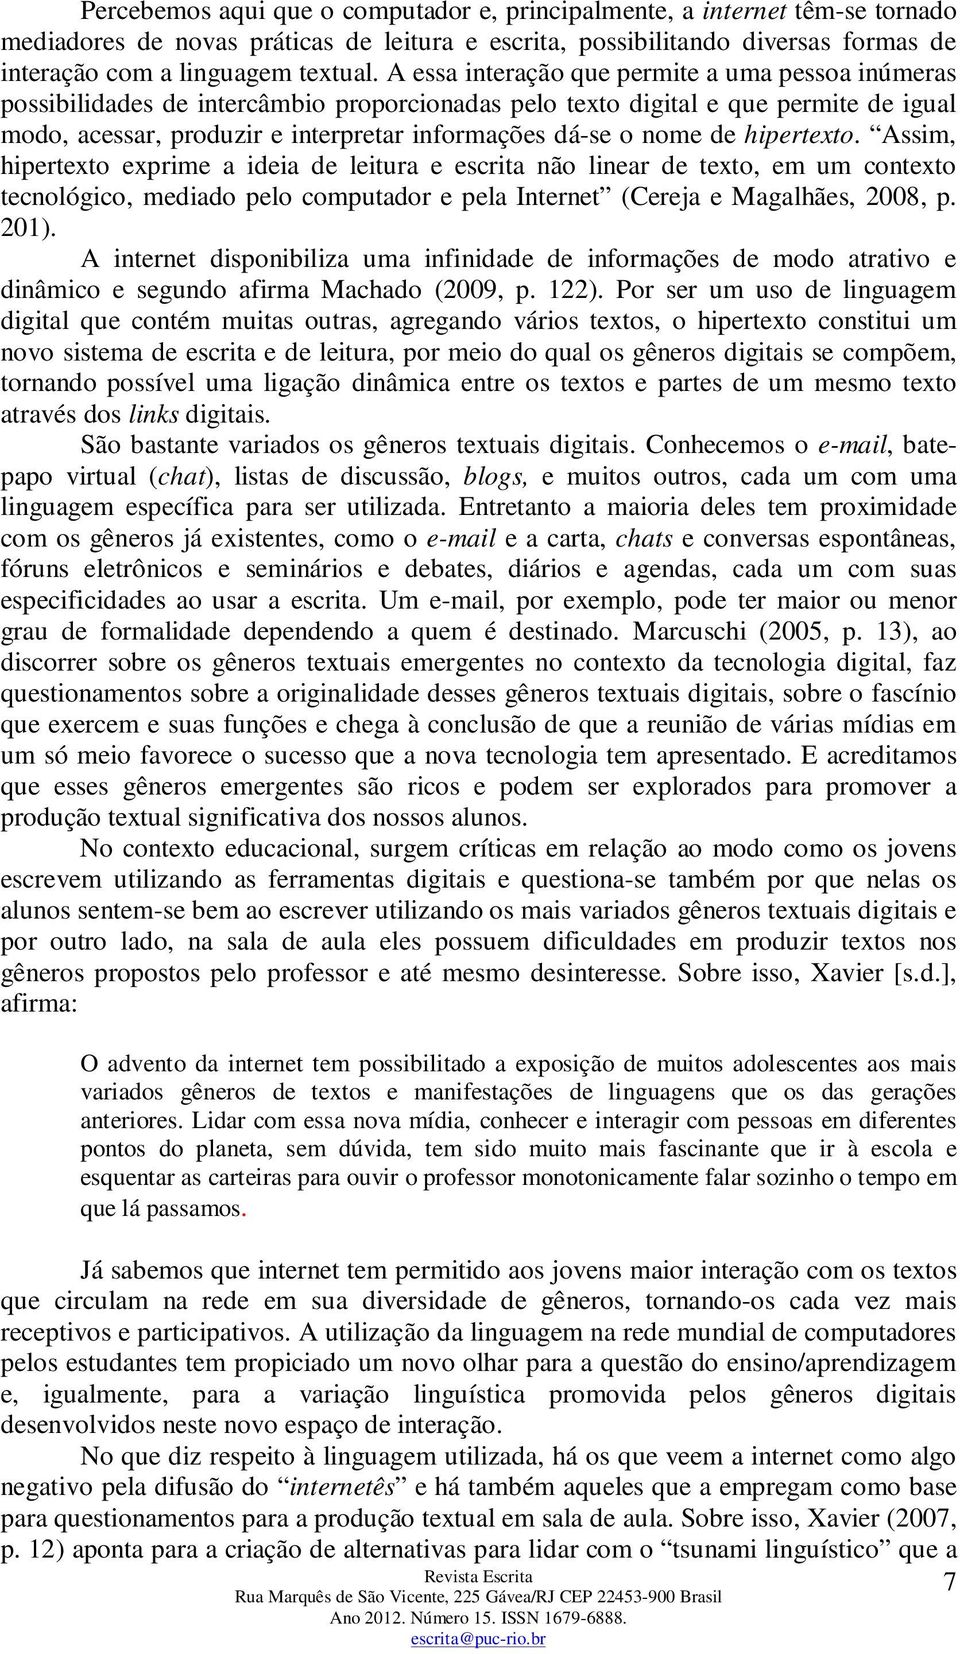 nome de hipertexto. Assim, hipertexto exprime a ideia de leitura e escrita não linear de texto, em um contexto tecnológico, mediado pelo computador e pela Internet (Cereja e Magalhães, 2008, p. 201).